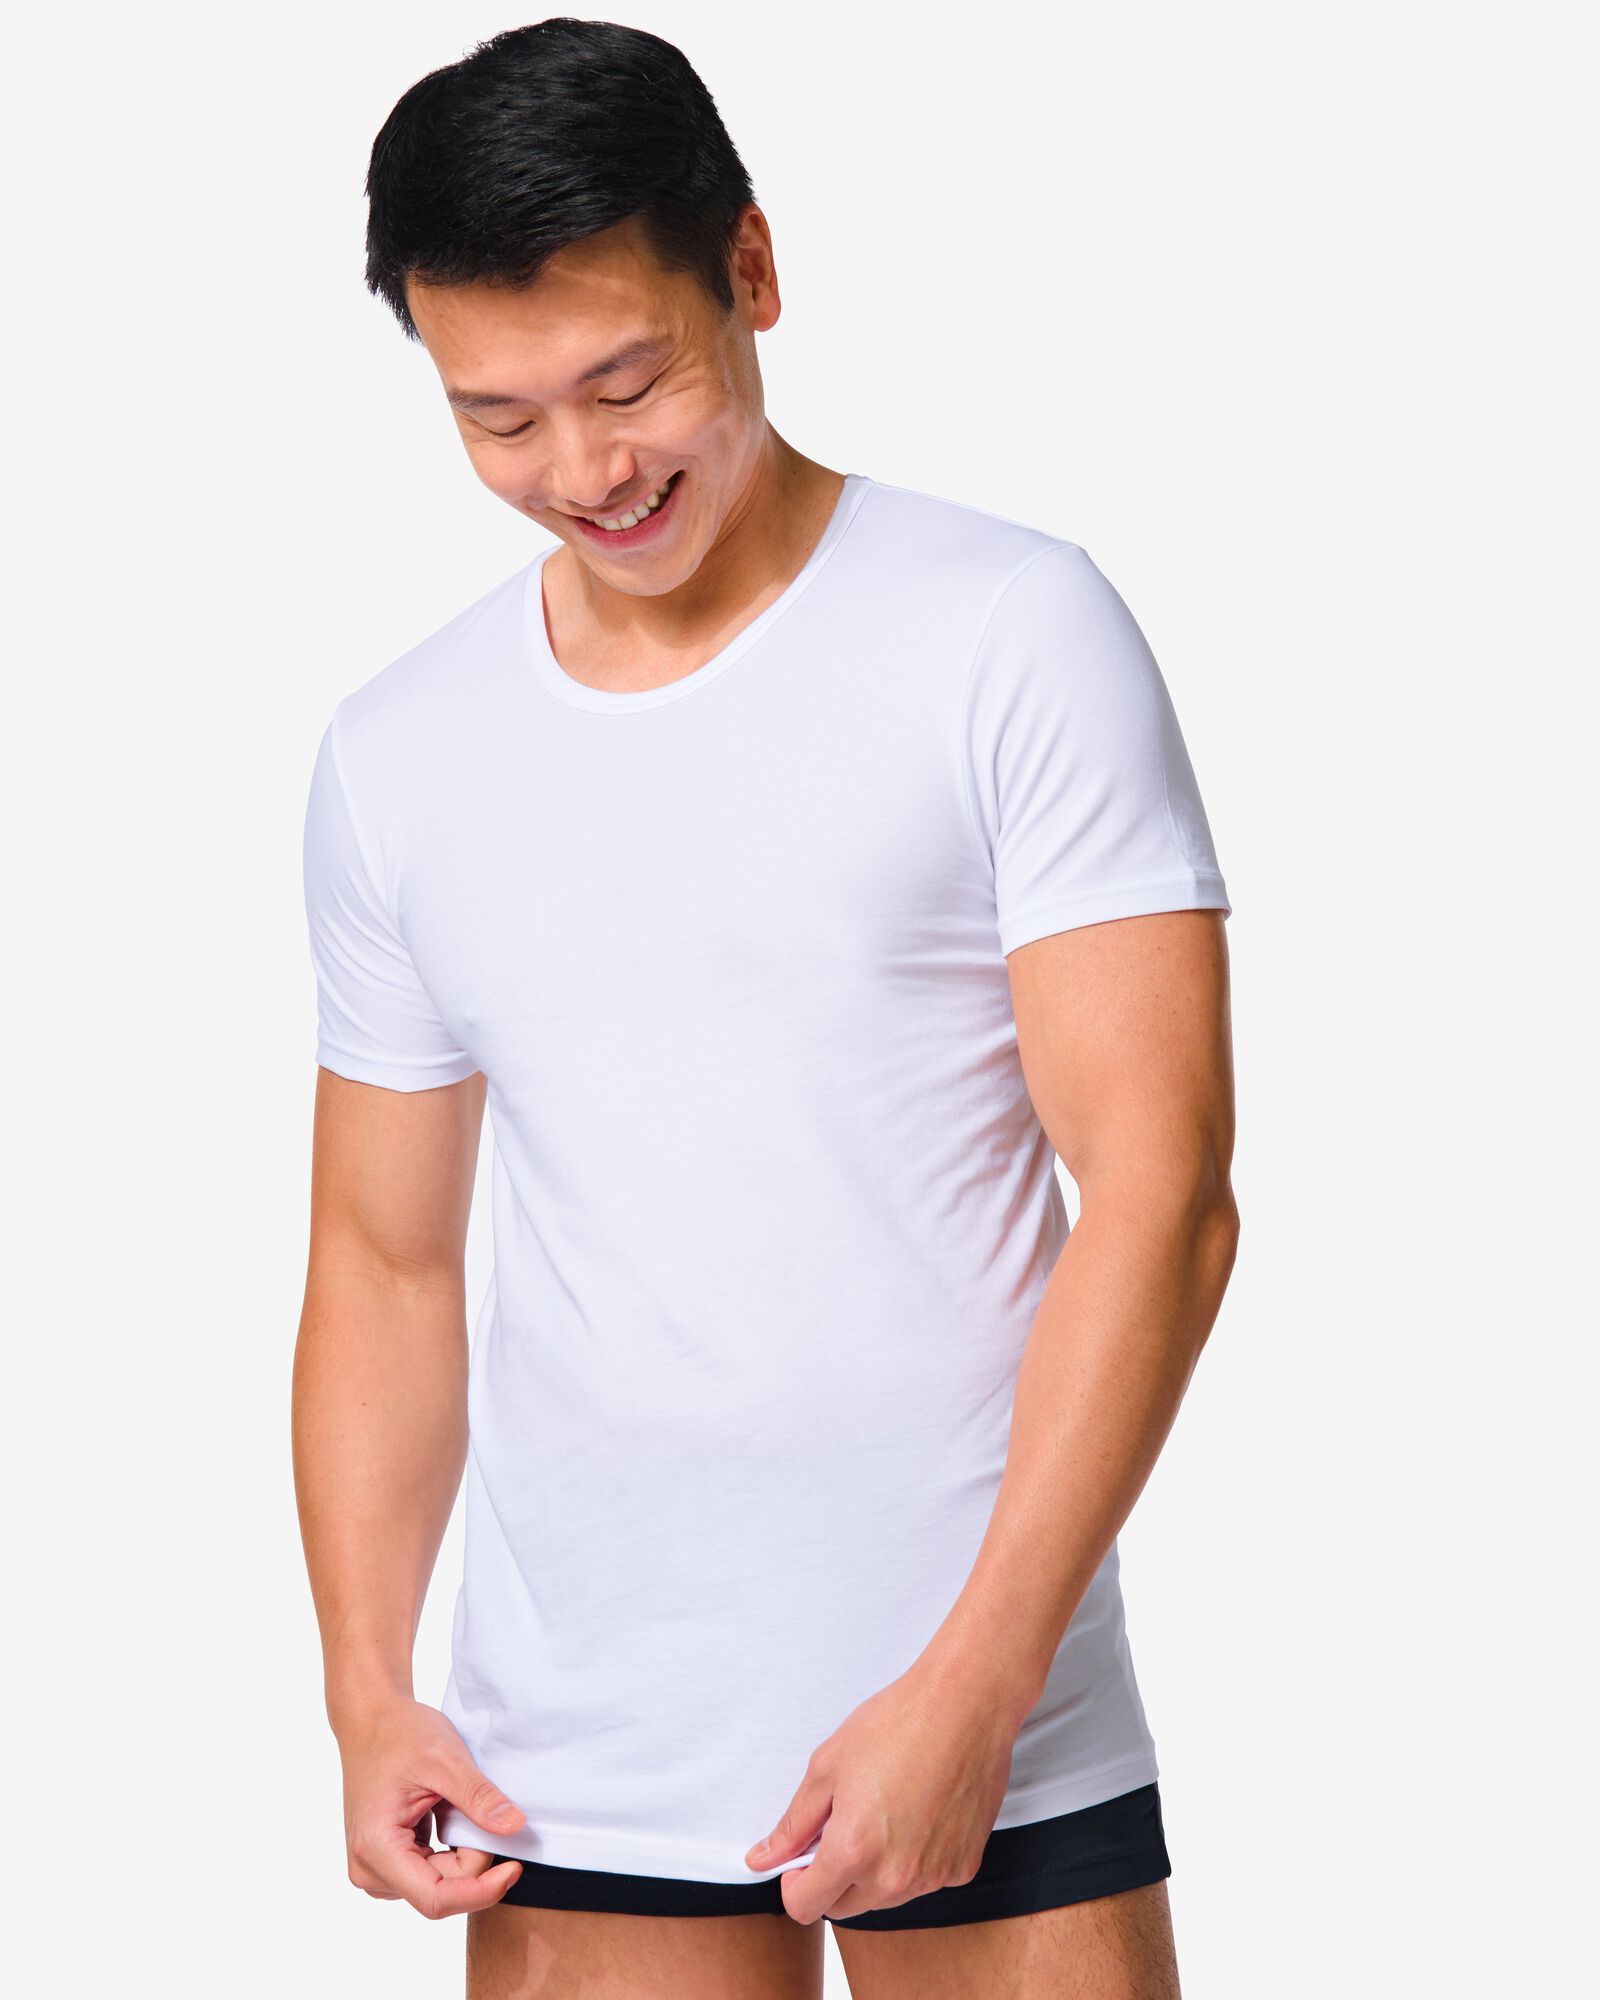 T-shirt blanc pour hommes - Mes T-shirts Blancs